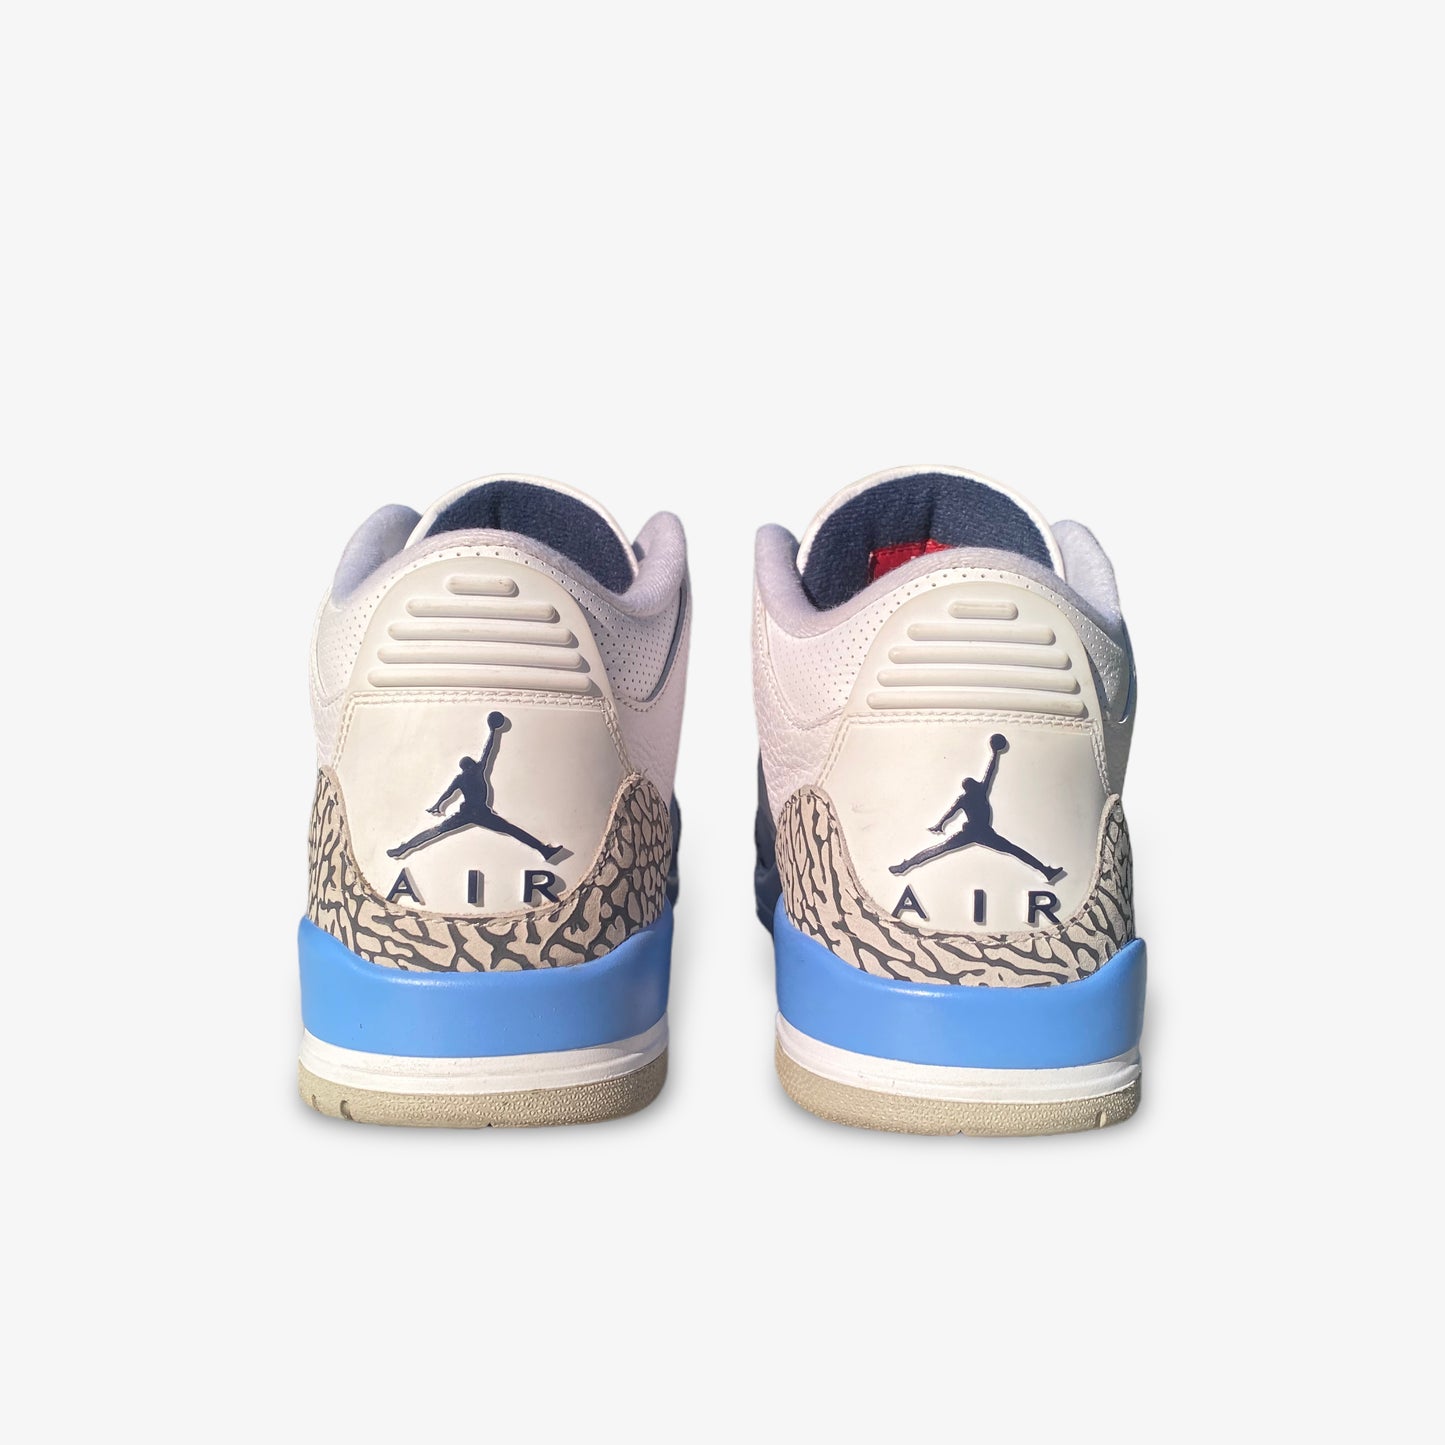 Air Jordan 3 “UNC” (2019)